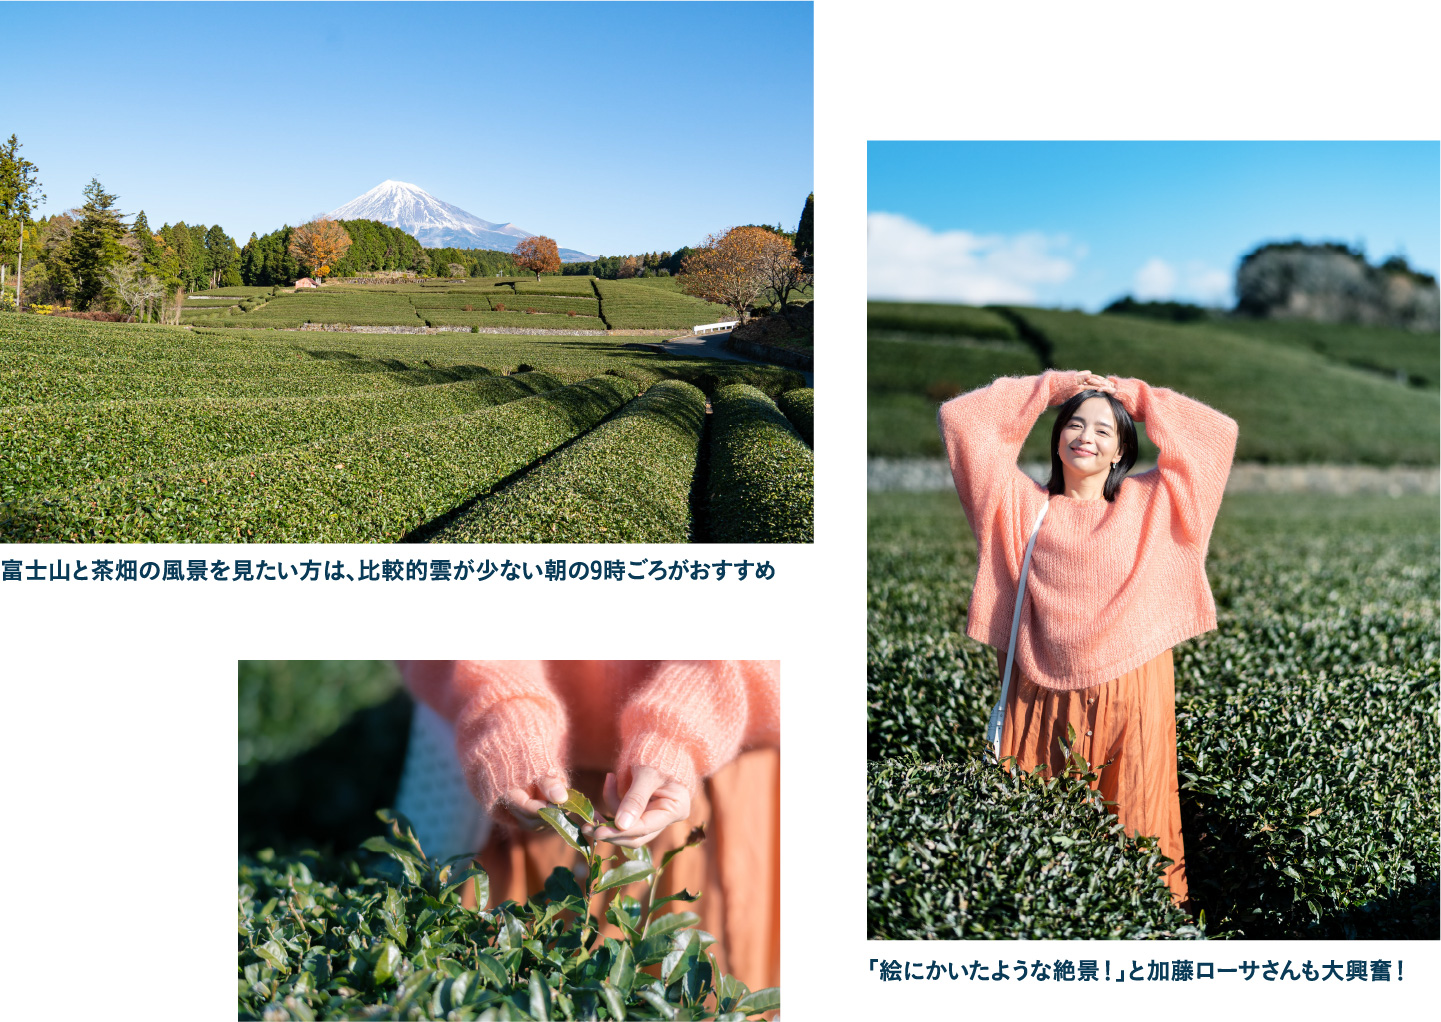 富士市を代表する景勝地大淵笹場で雄大な富士山と圧巻の茶畑を望む